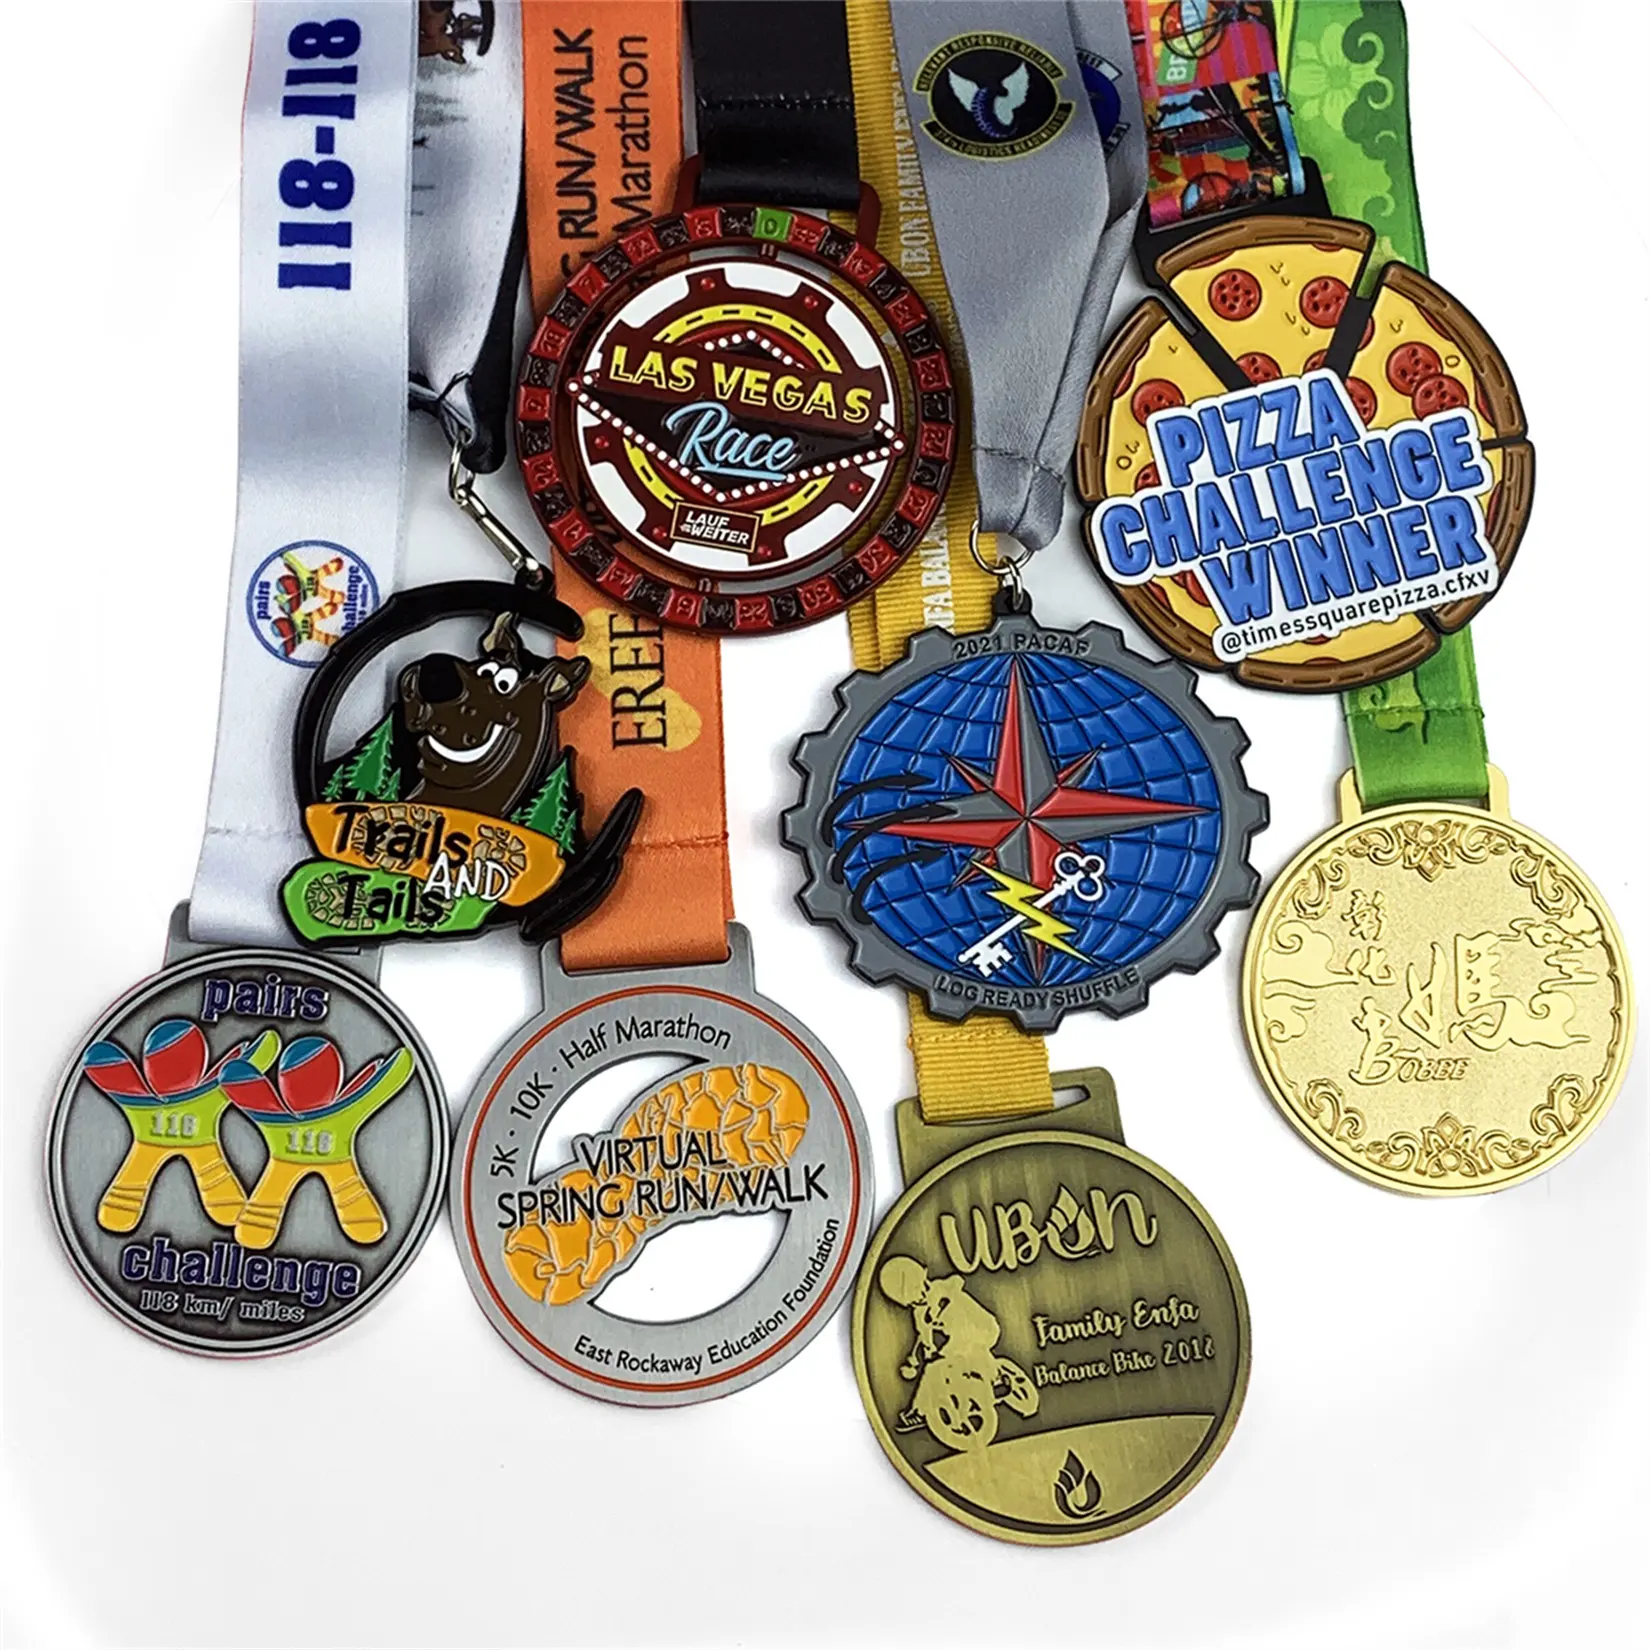 Chạy Kim Loại Chạy Giải Thưởng Tùy Chỉnh Huy Chương Thể Thao Với Ribbon Nhà Sản Xuất Huy Chương Thăng Hoa Kỳ Diệu Marathon Race Finisher 5K